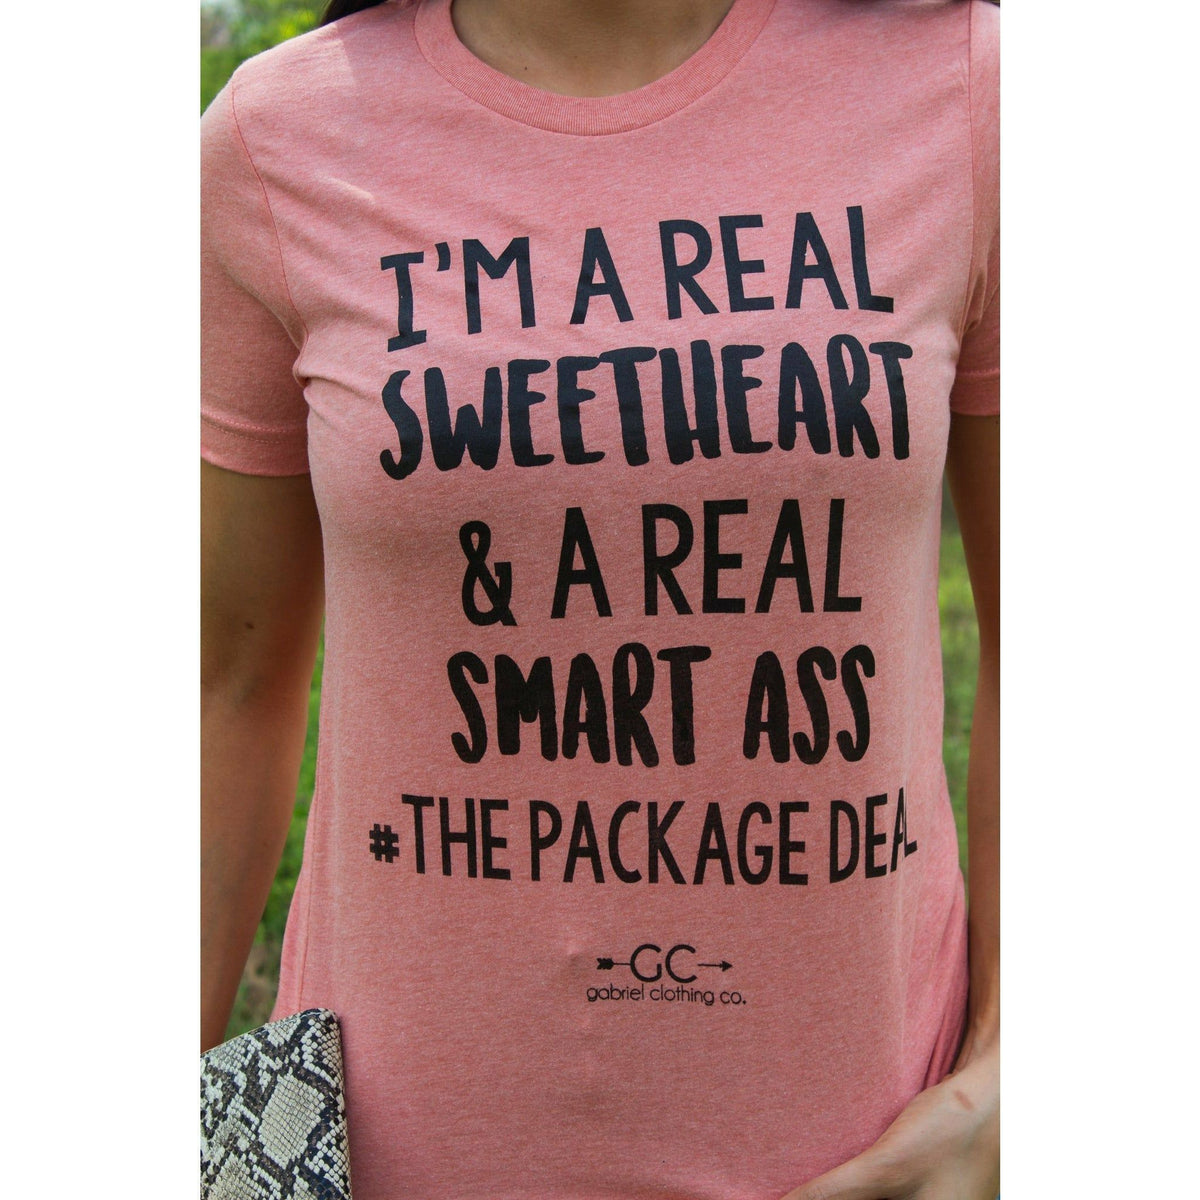 Sweetheart The Package Deal tee or sweatshirt